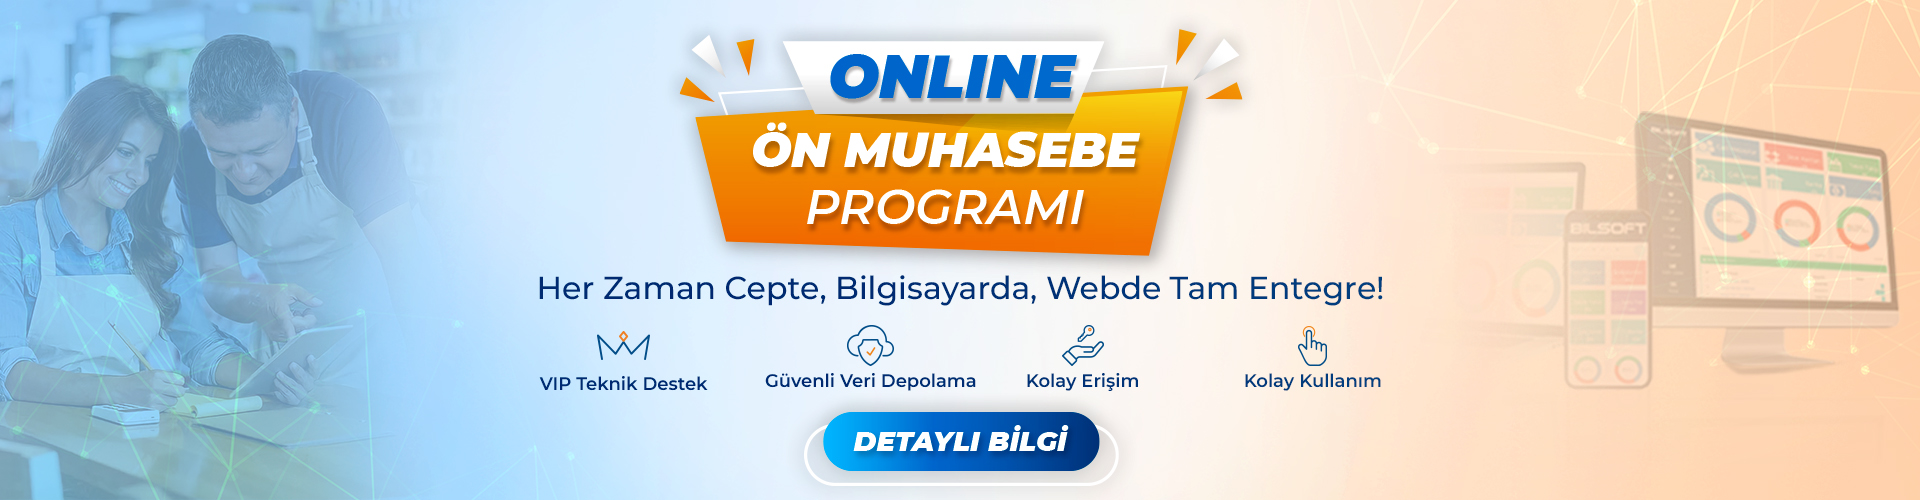 online n muhasebe program